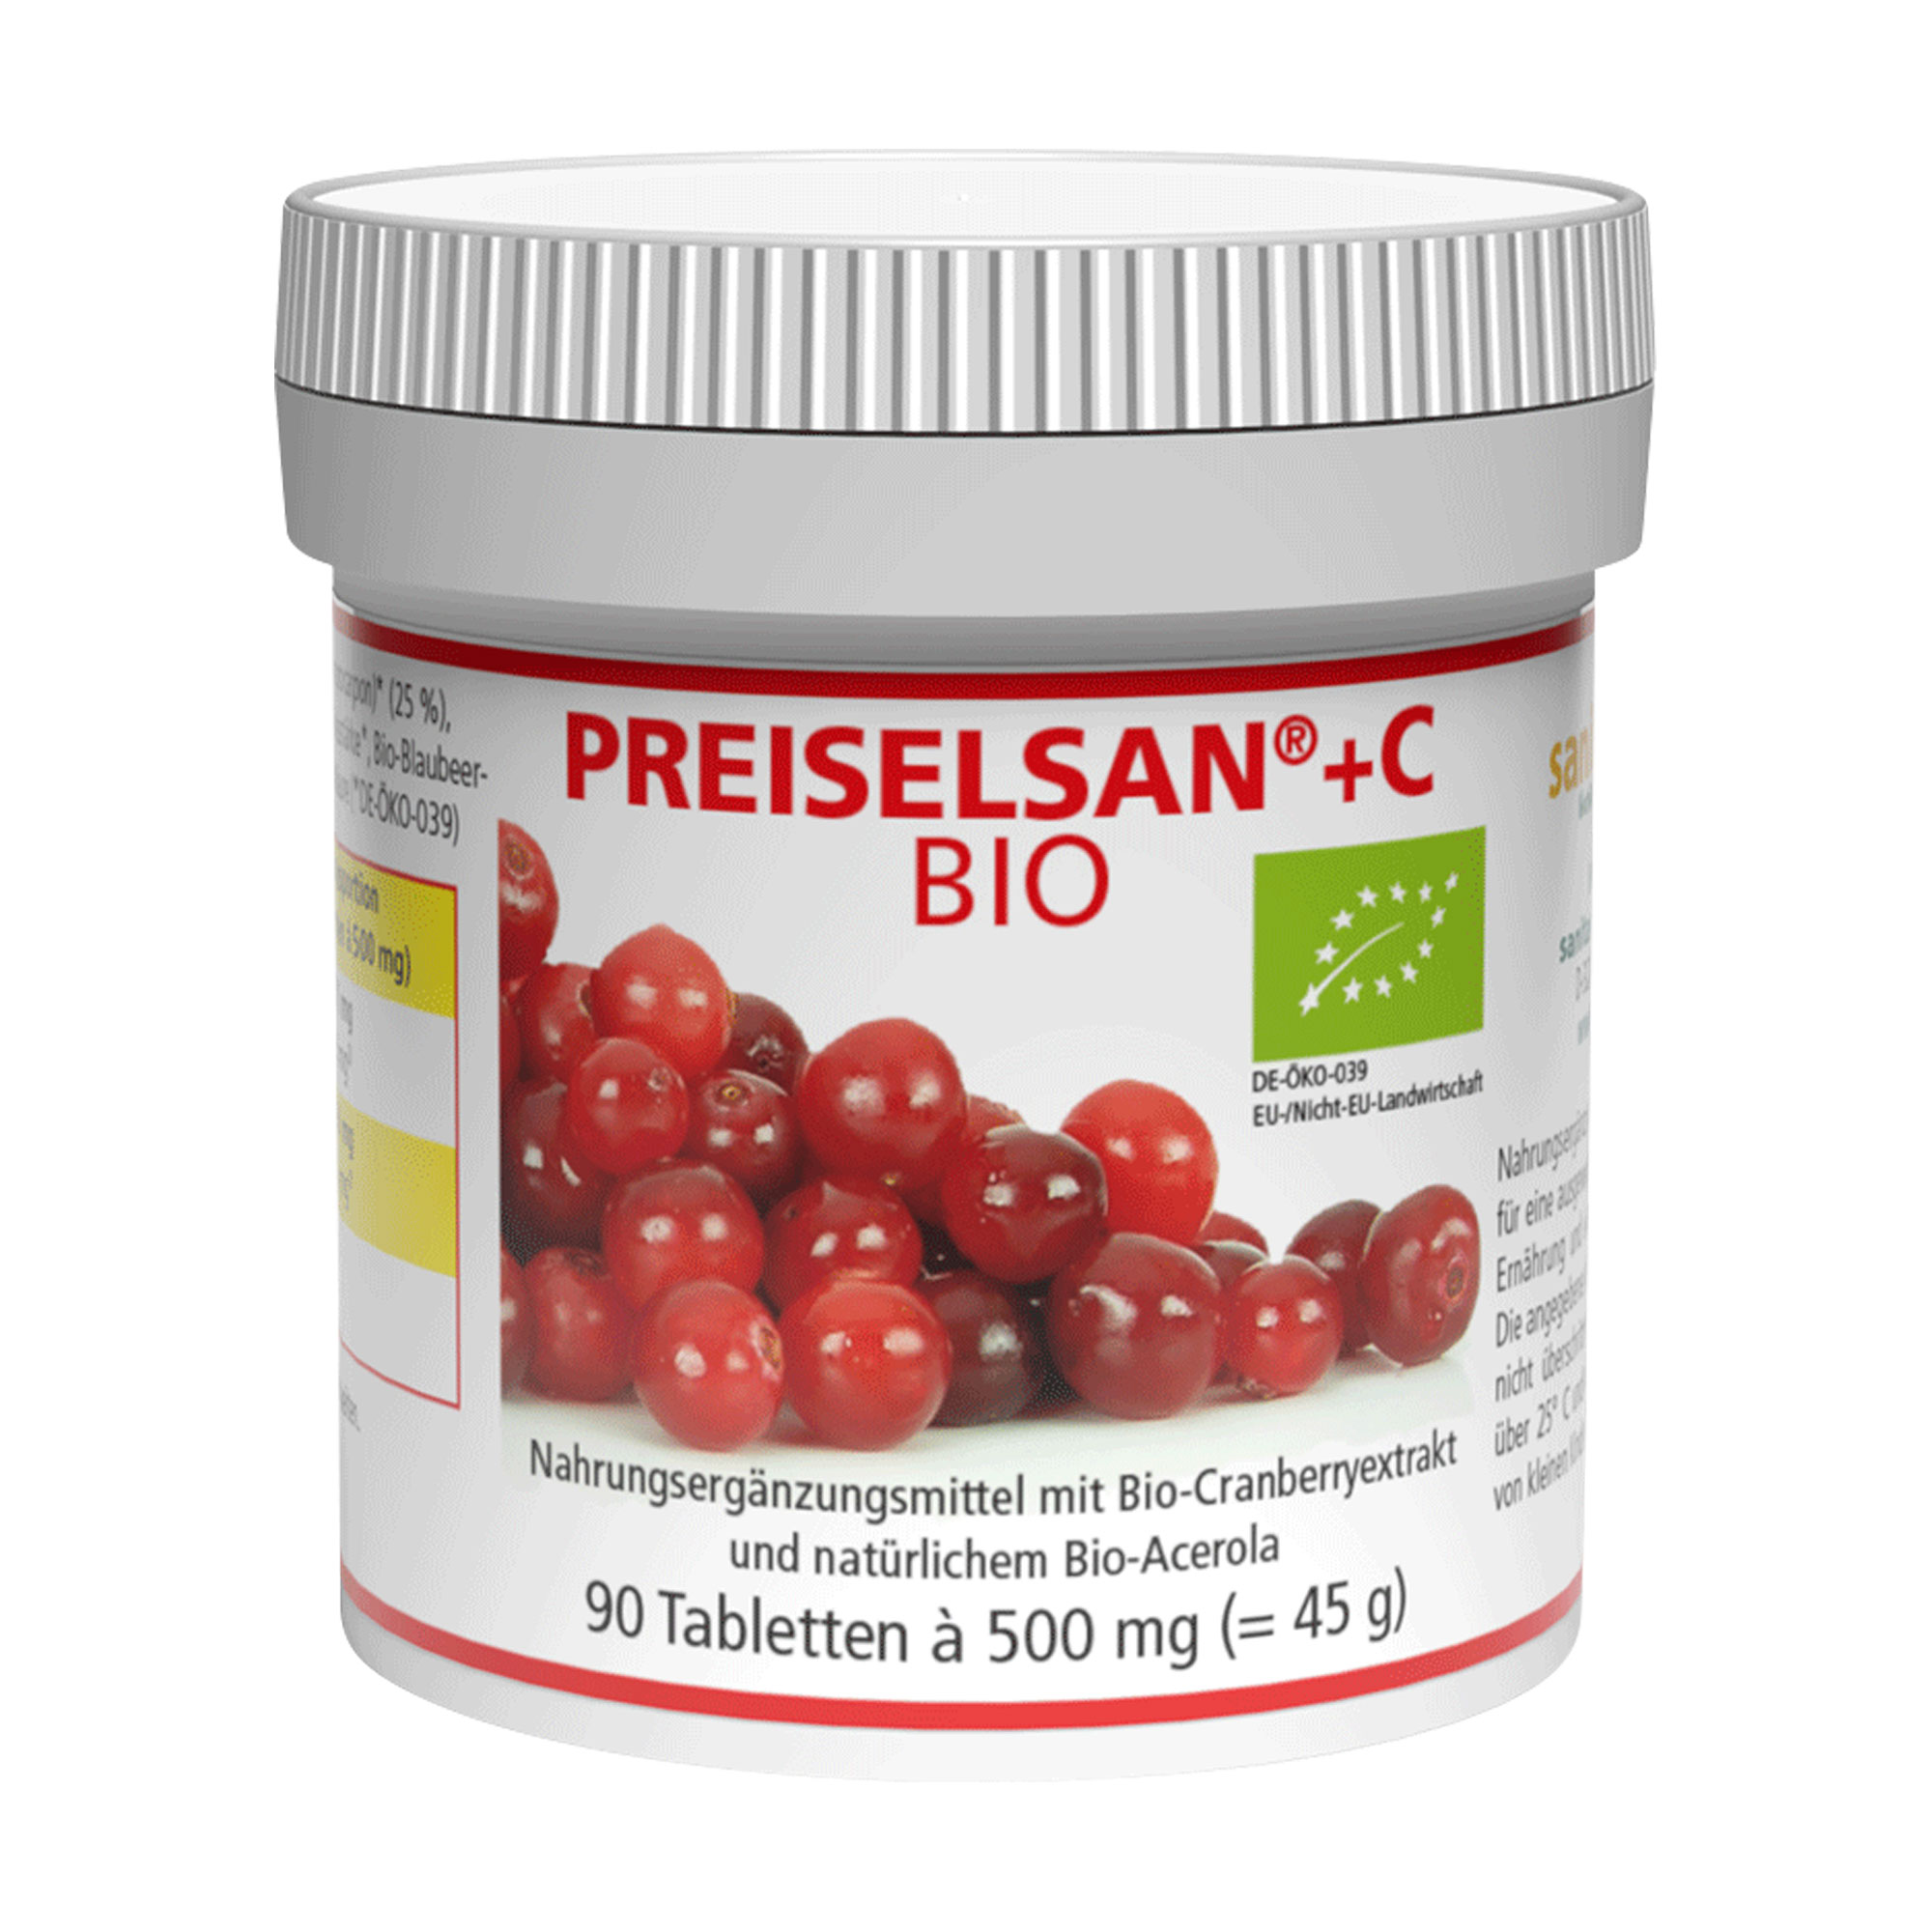 Nahrungsergänzungsmittel mit Bio-Cranberryextrakt und natürlichem Bio-Acerola.